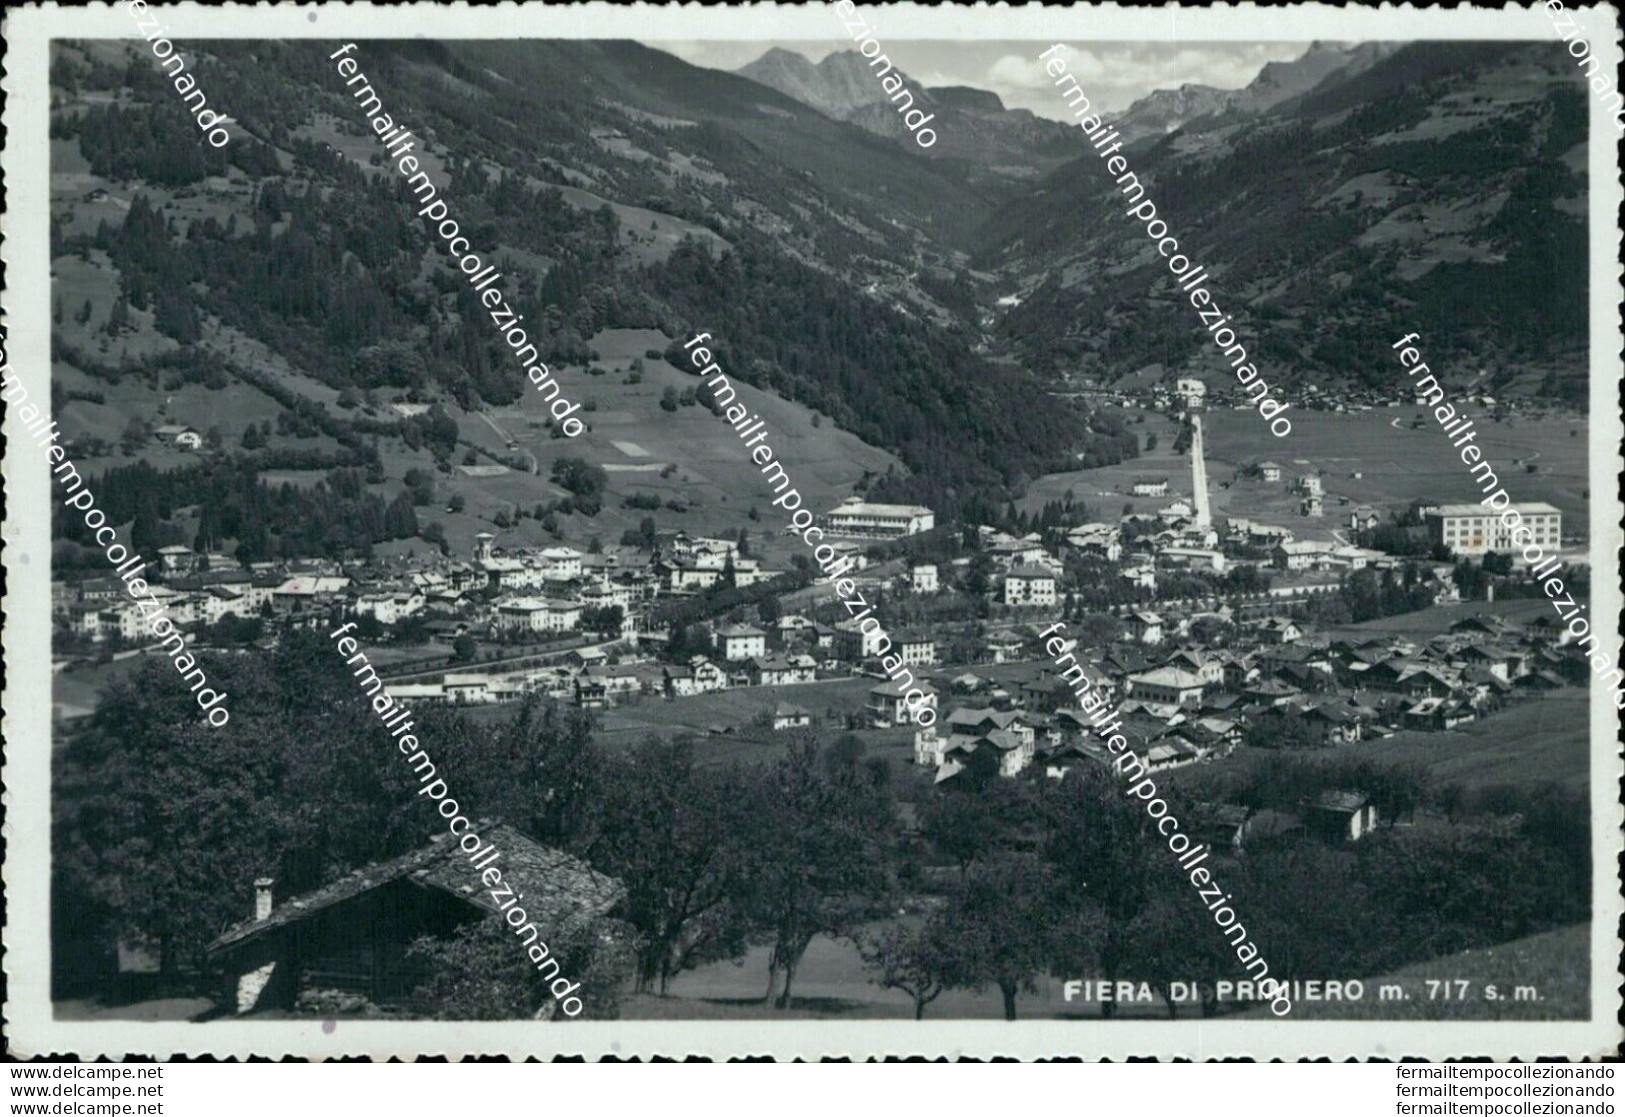 Bi332 Cartolina Fiera Di Primiero Provincia Di Trento - Trento